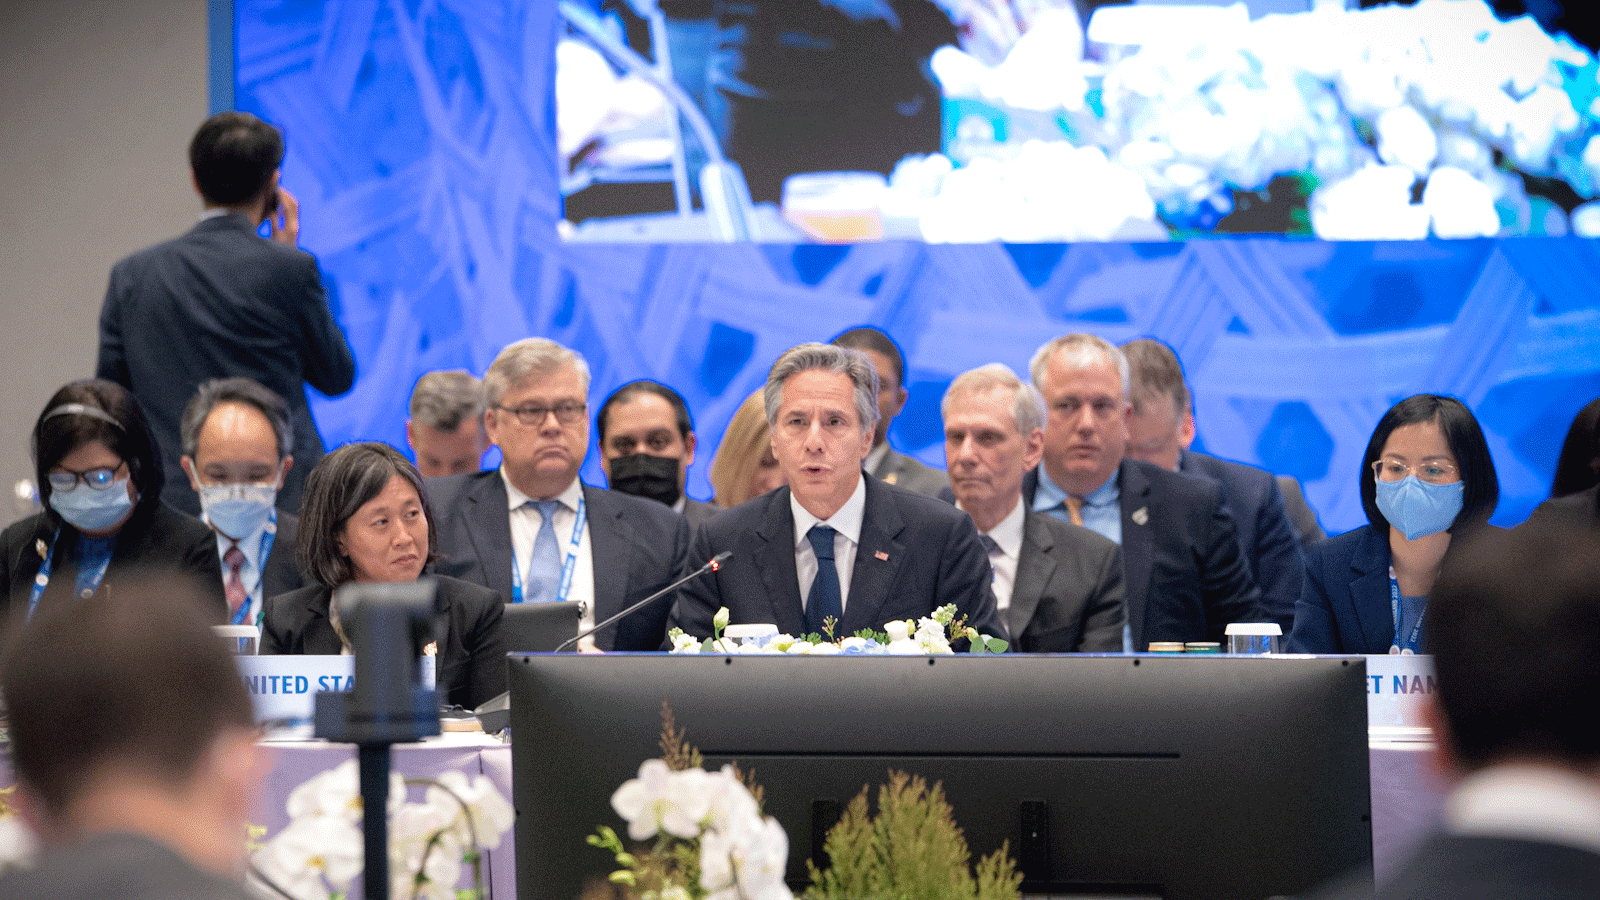 وزير الخارجية الأميركي أنتوني بلينكن يتحدث في قمة APEC